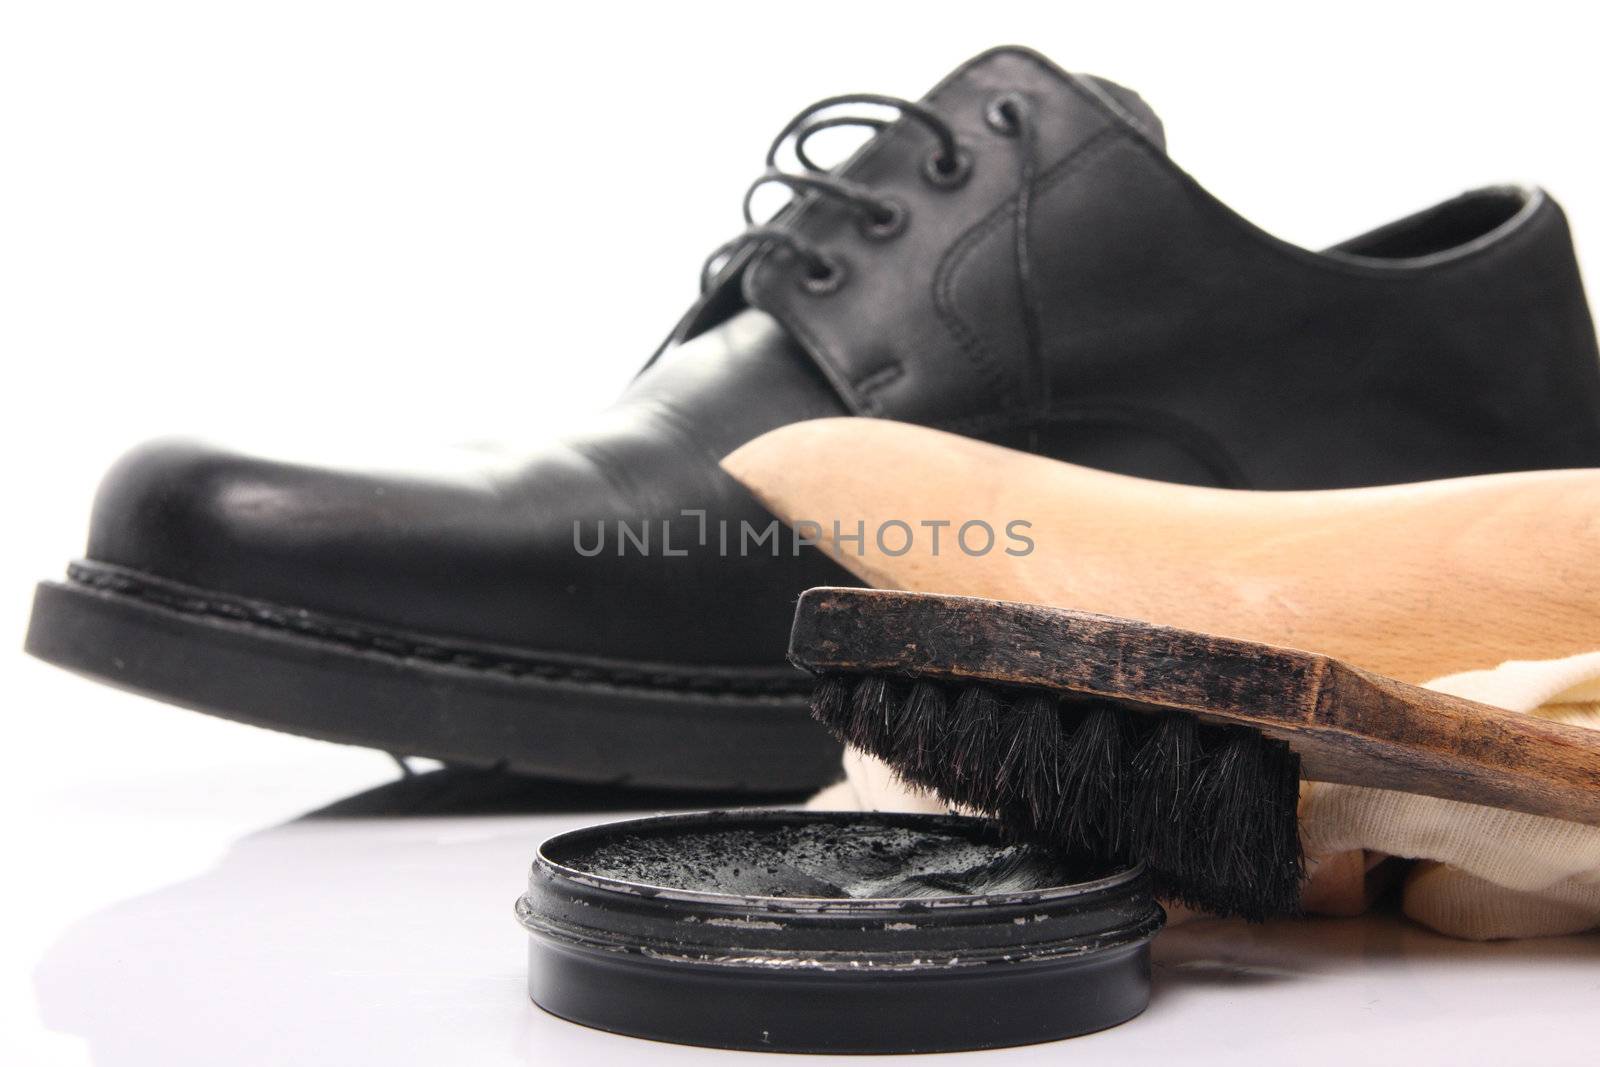 shoe care by derausdo